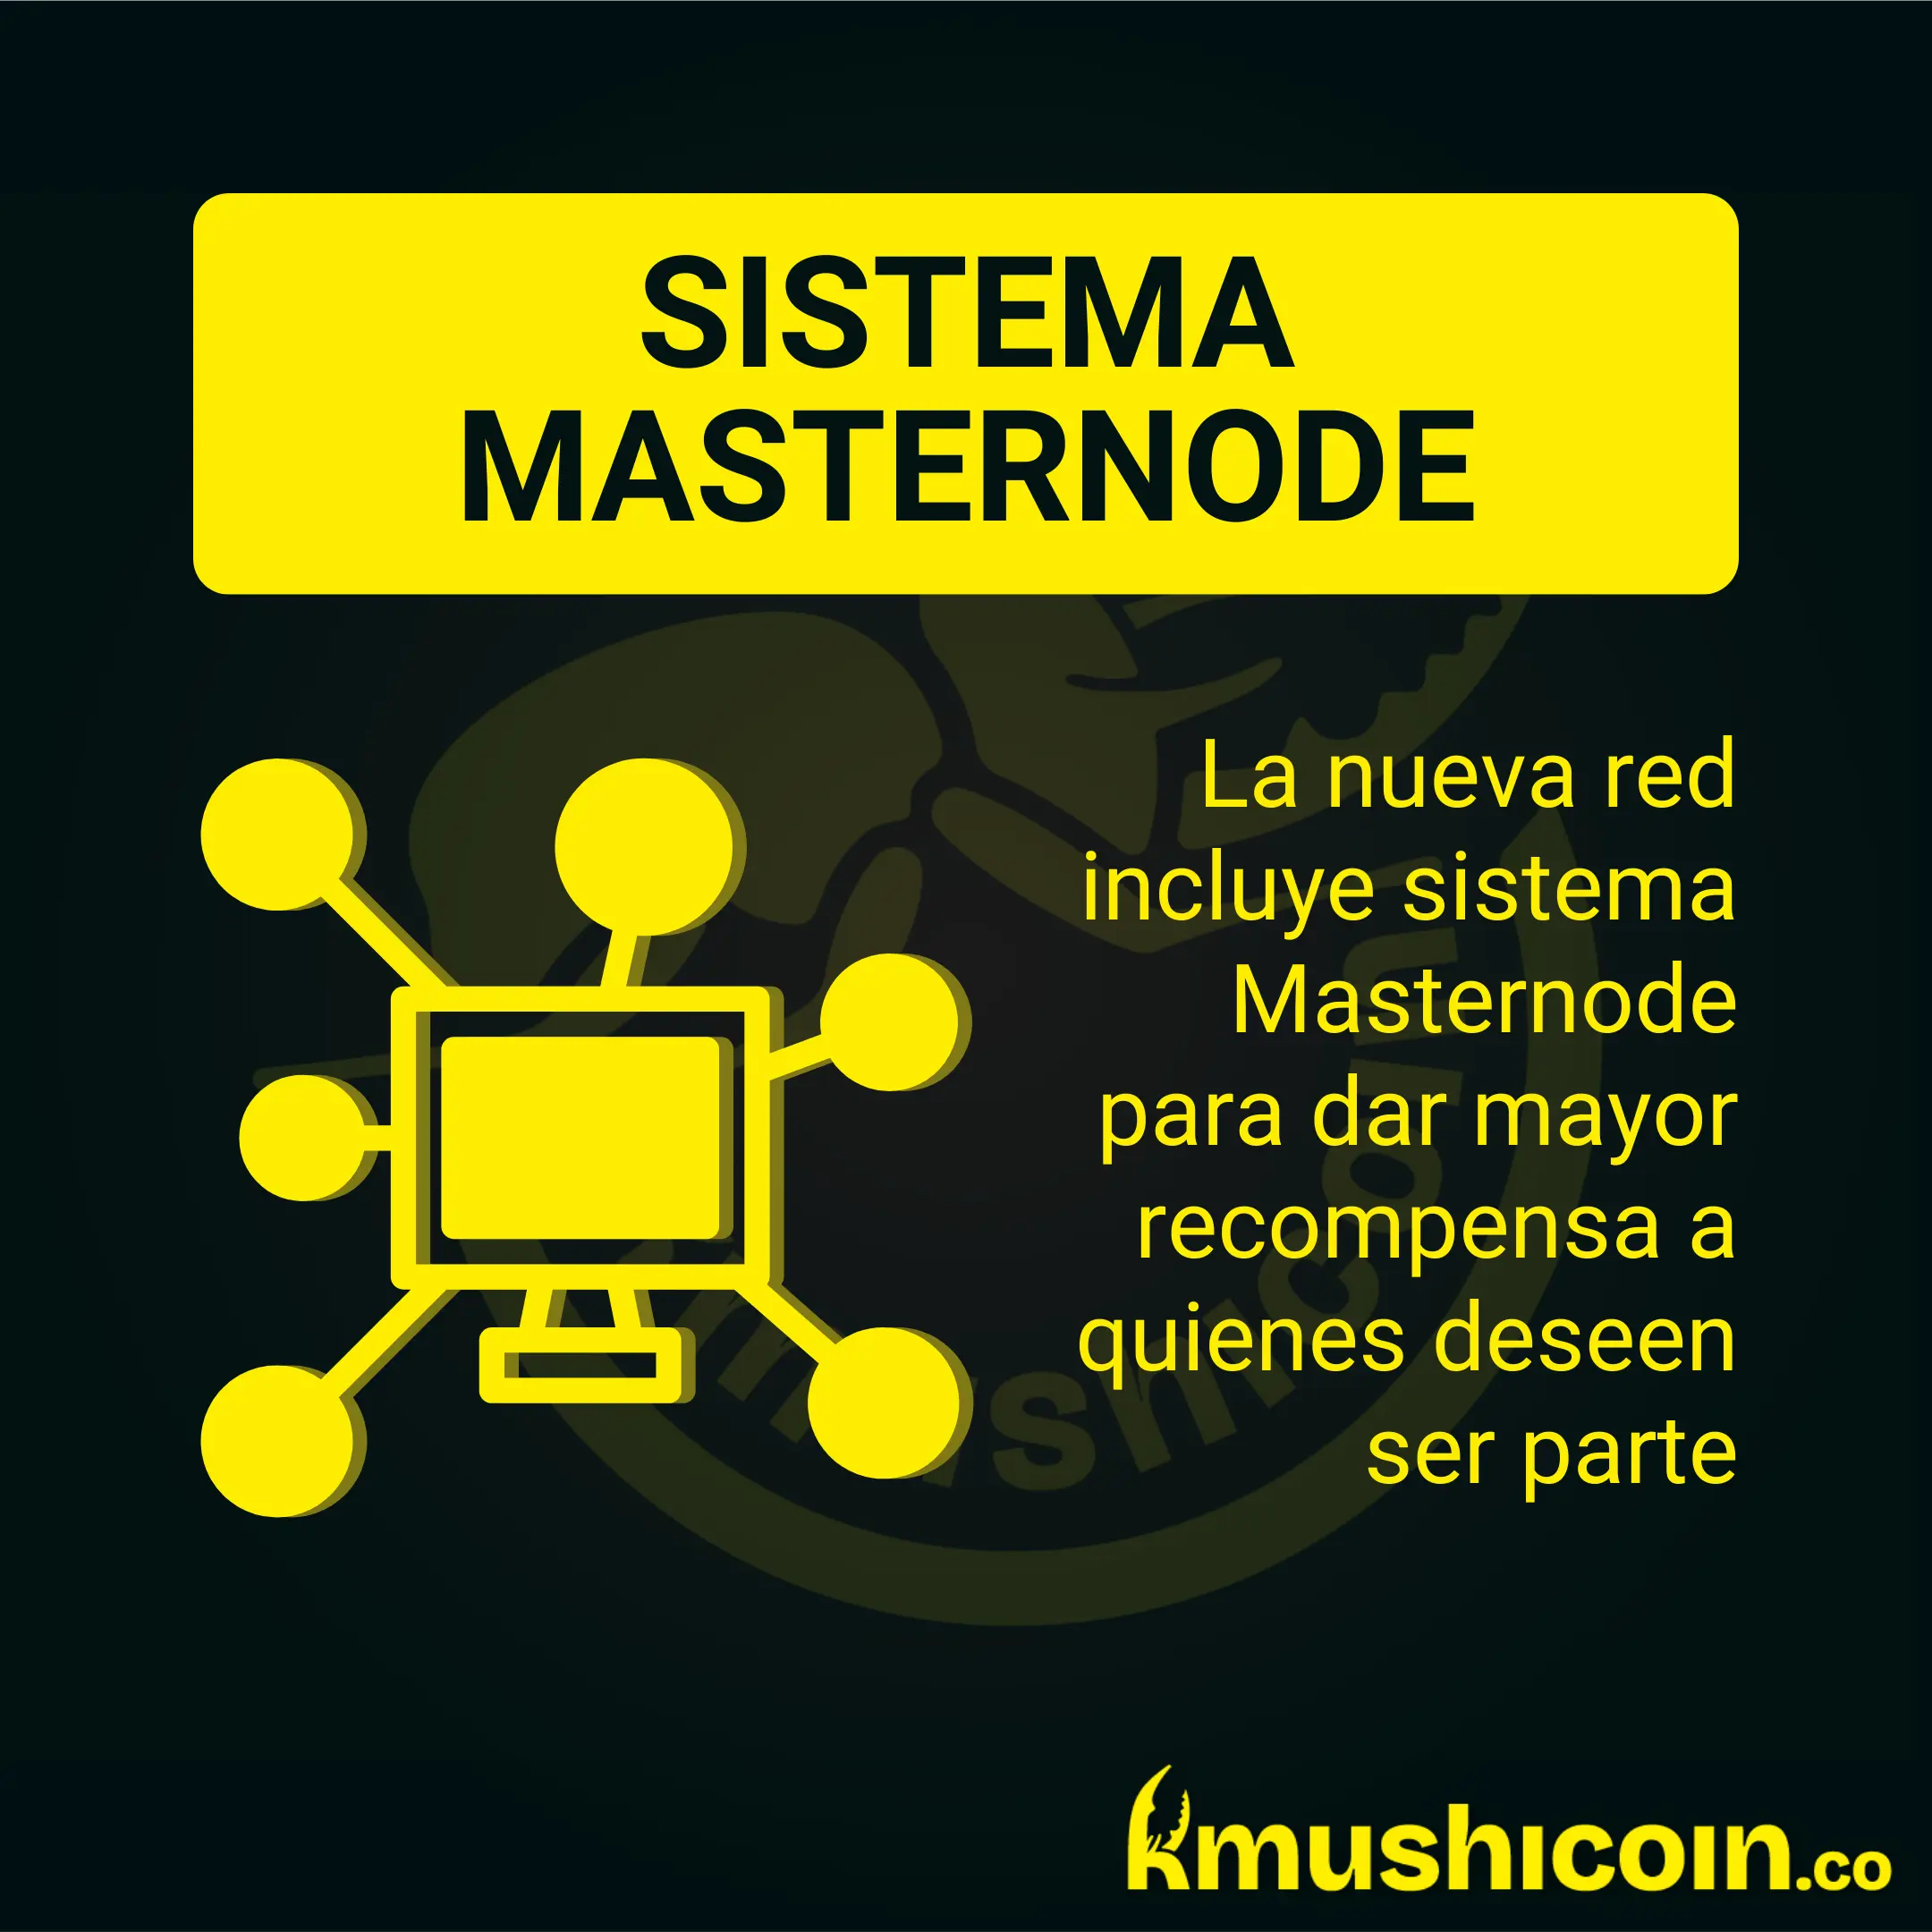 Kmushicoin Revoluciona las Criptomonedas en Colombia con la Adopción de Masternodes: ¡Descubre Cómo Participar y Maximizar Tus Ganancias!